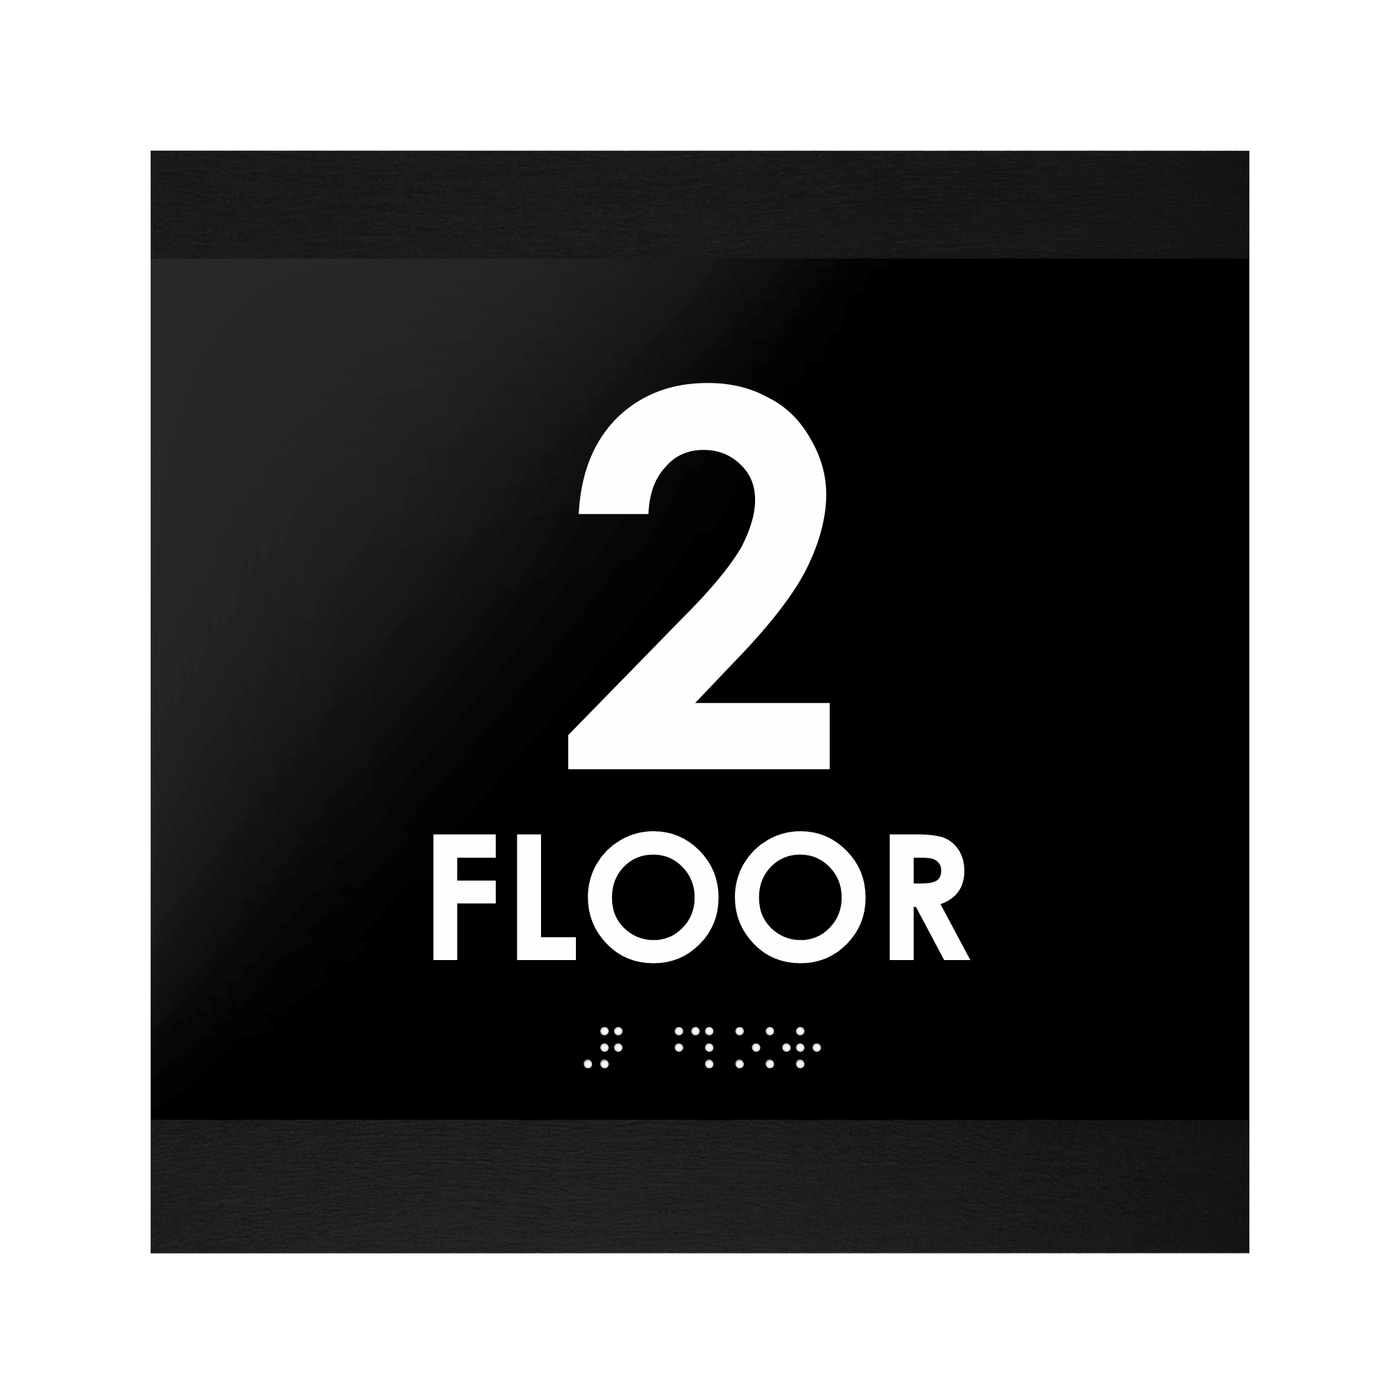 Floor Signs - 2nd Floor Sign "Buro" Design